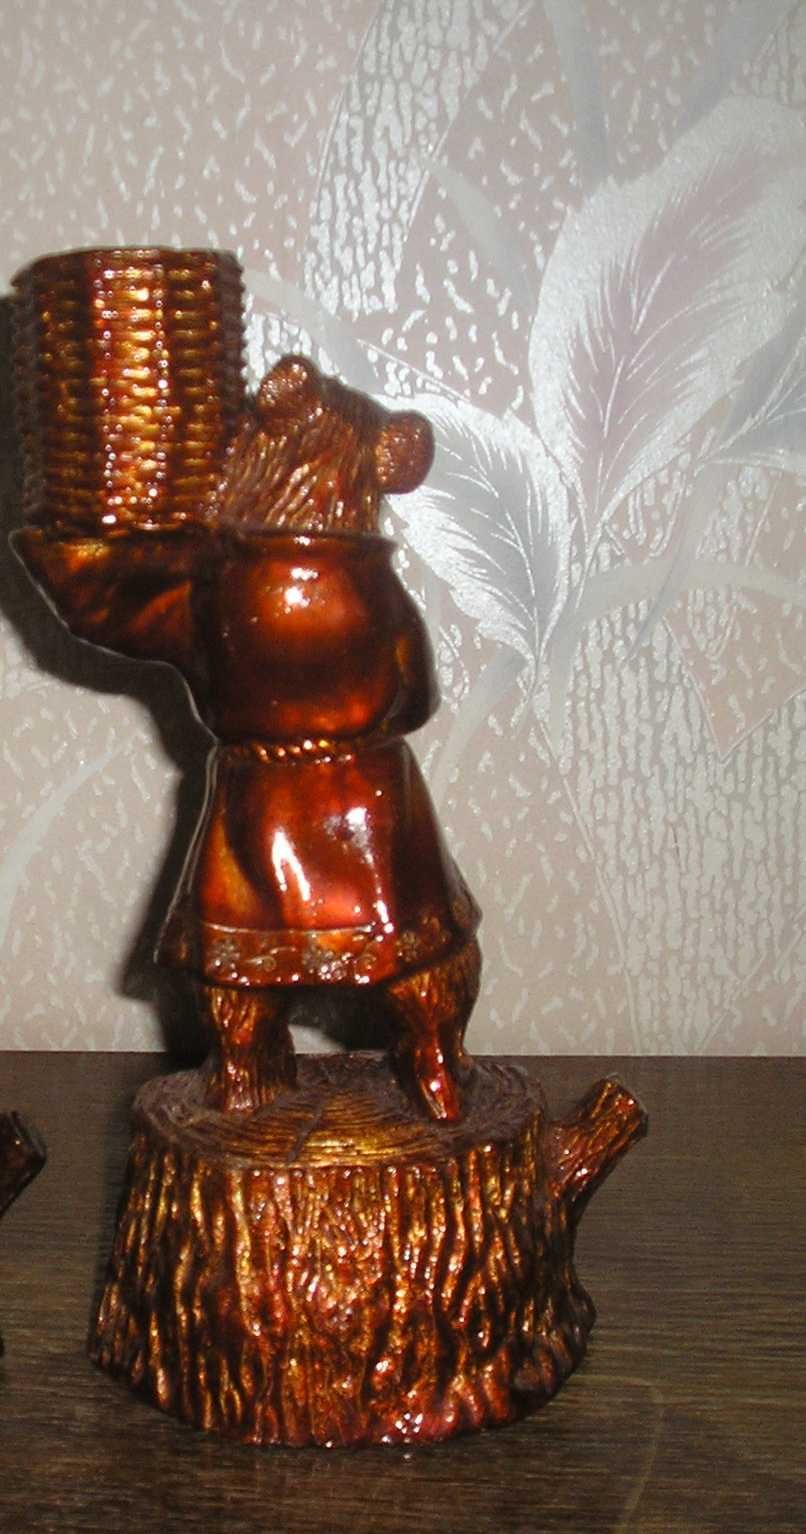 Статуэтка: Медведь с корзиной. СССР (Луганский станкостроительный заво